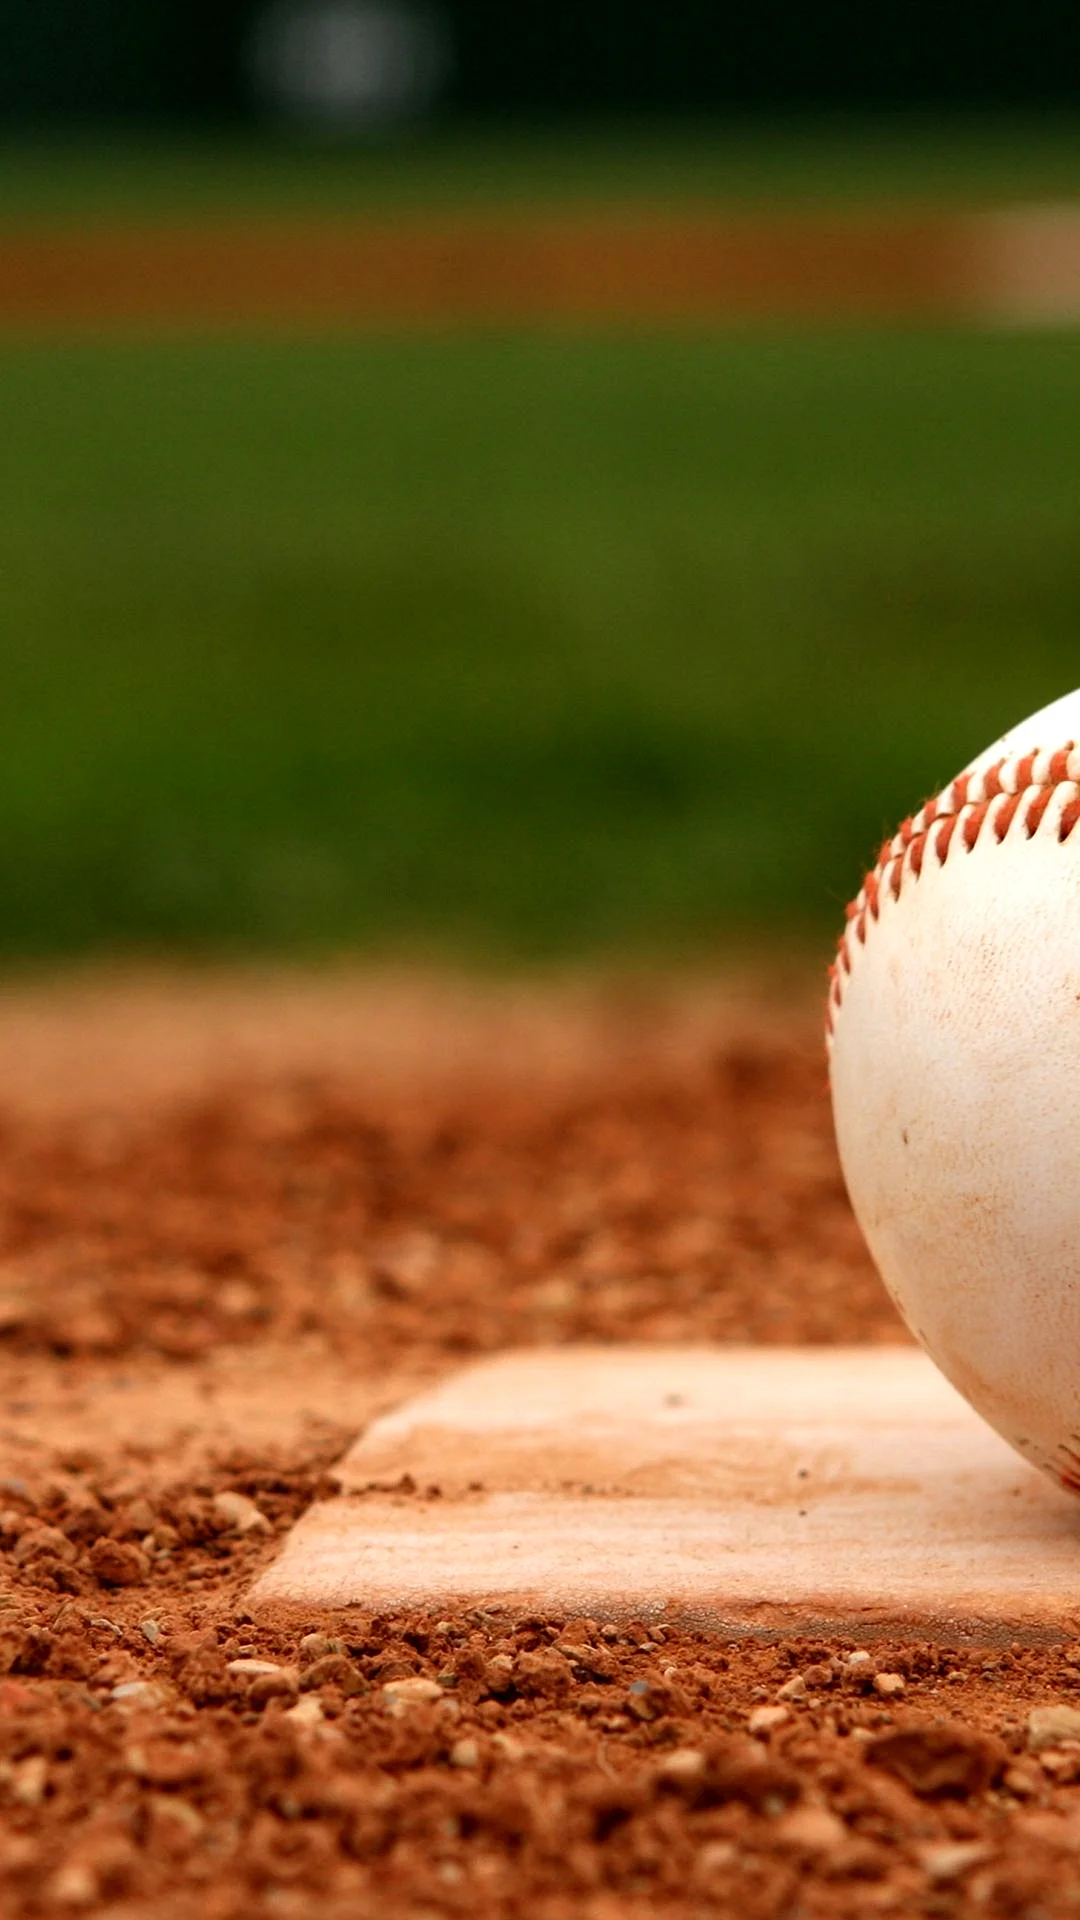 Baseball Tactics Wallpaper For iPhone